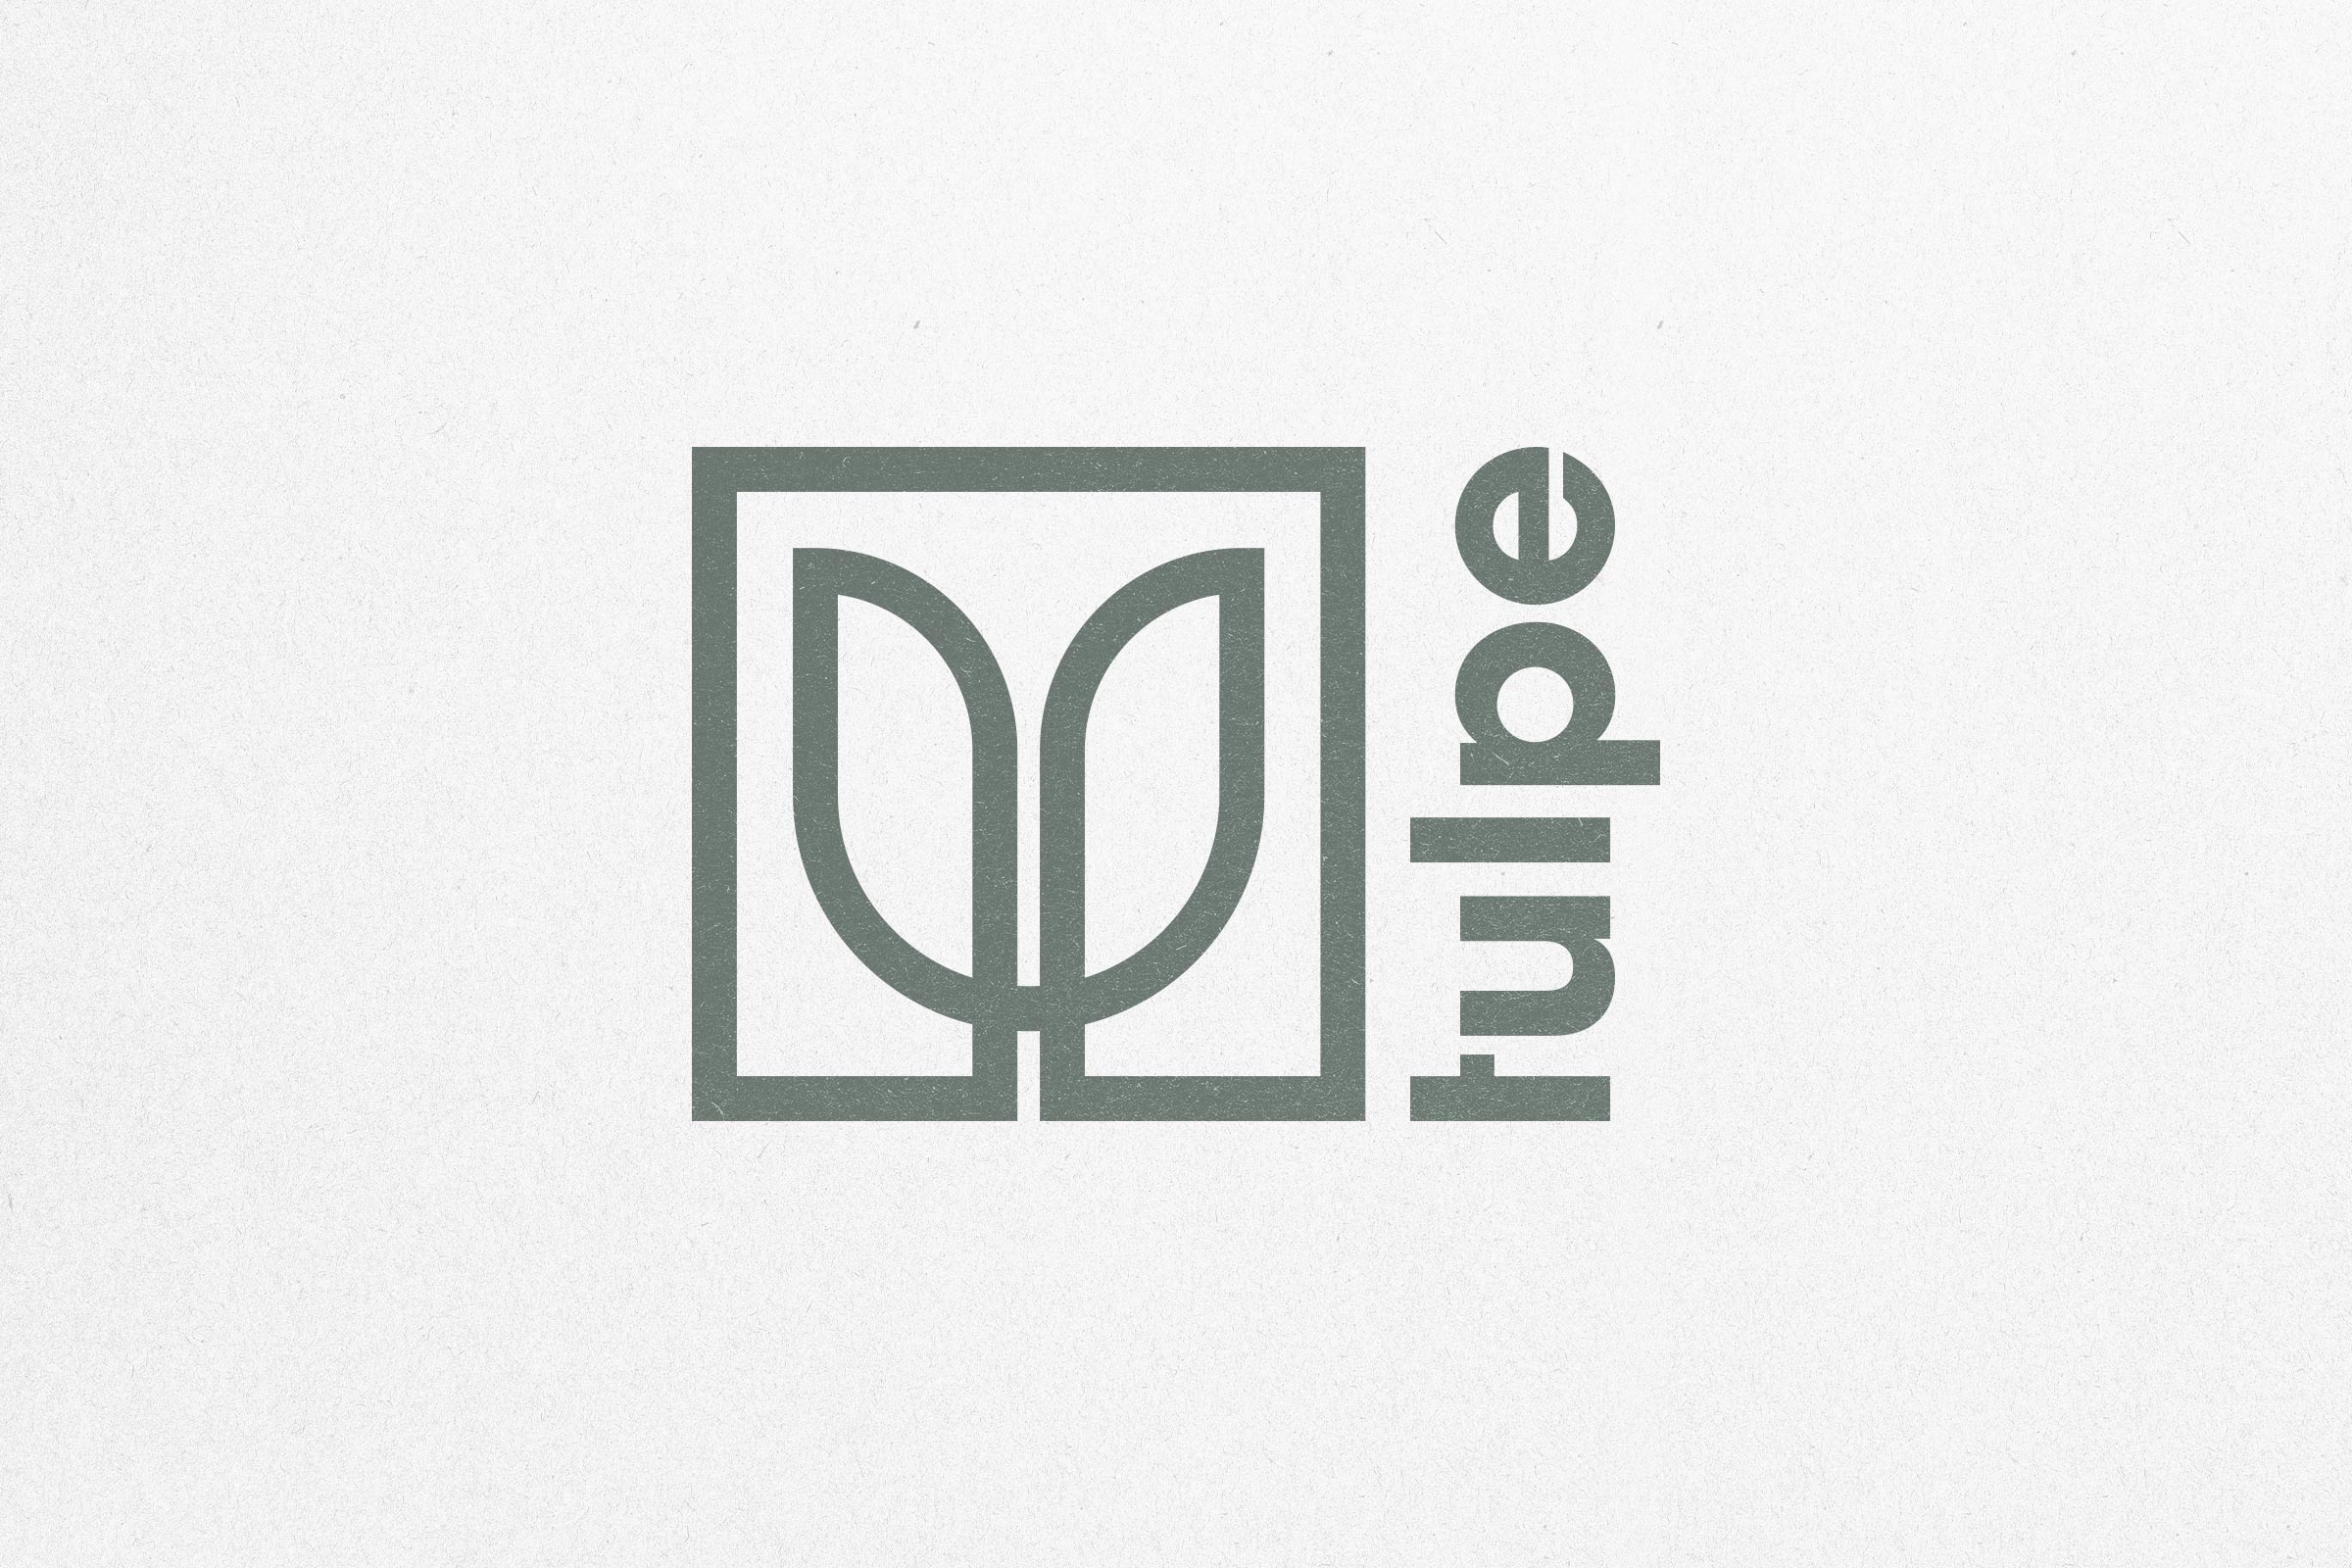 Tulpe_Logo_square